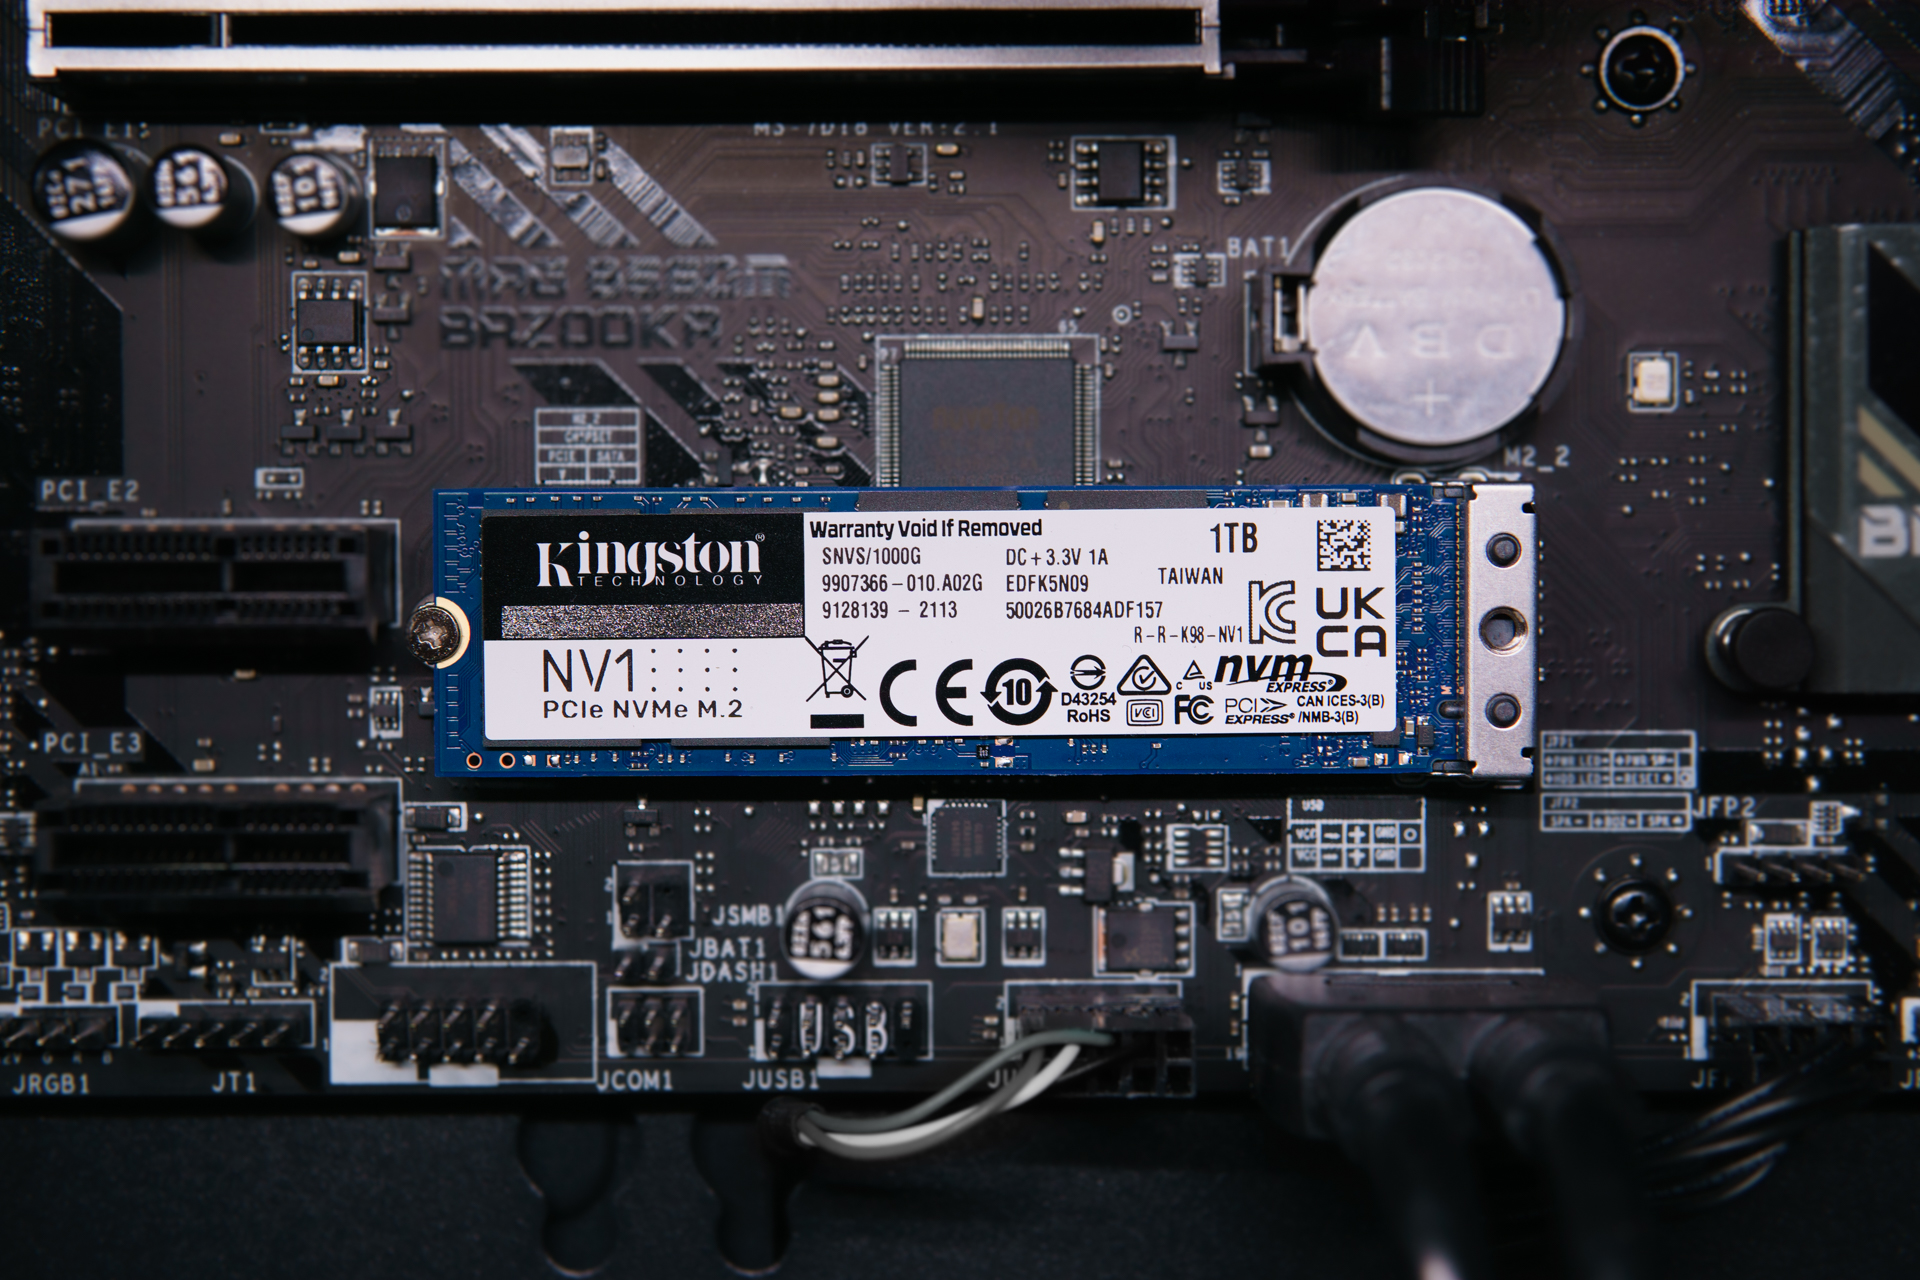 [รีวิว] ‘Kingston NV1’ SSD NVMe รุ่นเริ่มต้น แรงนิด ๆ ราคาน่าคบ